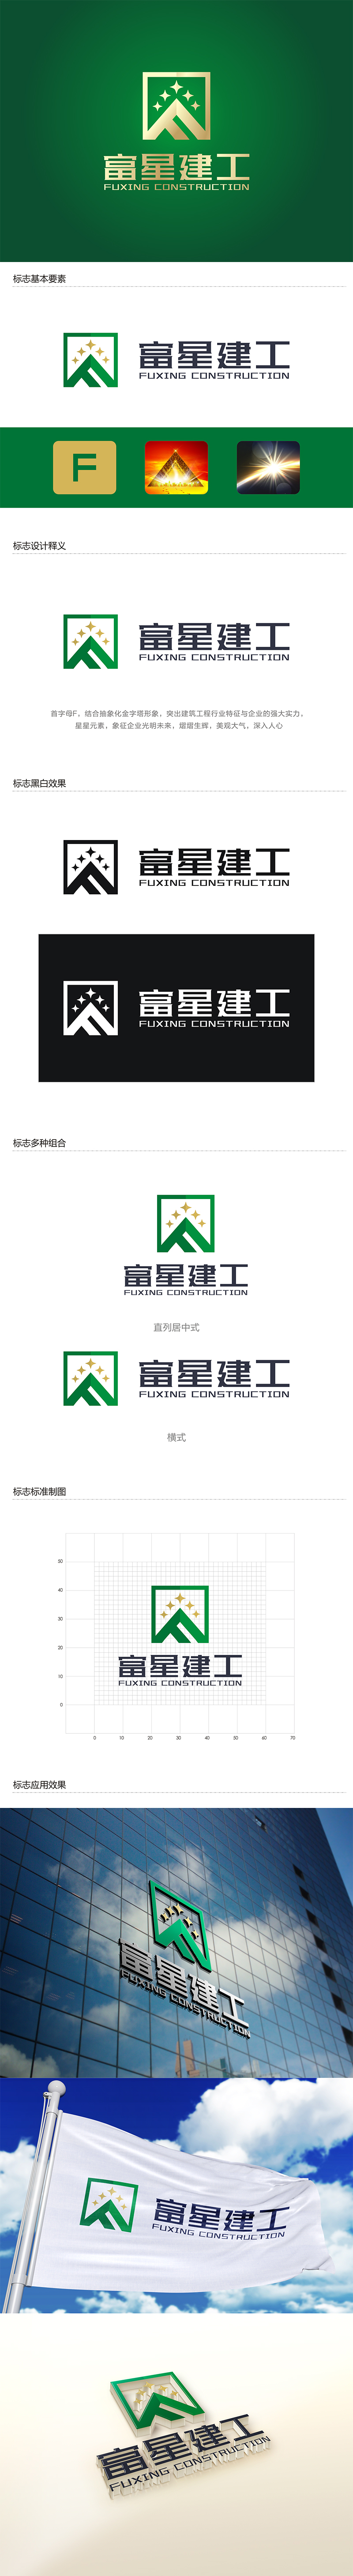 赵锡涛的天津富星建筑工程有限公司logo设计